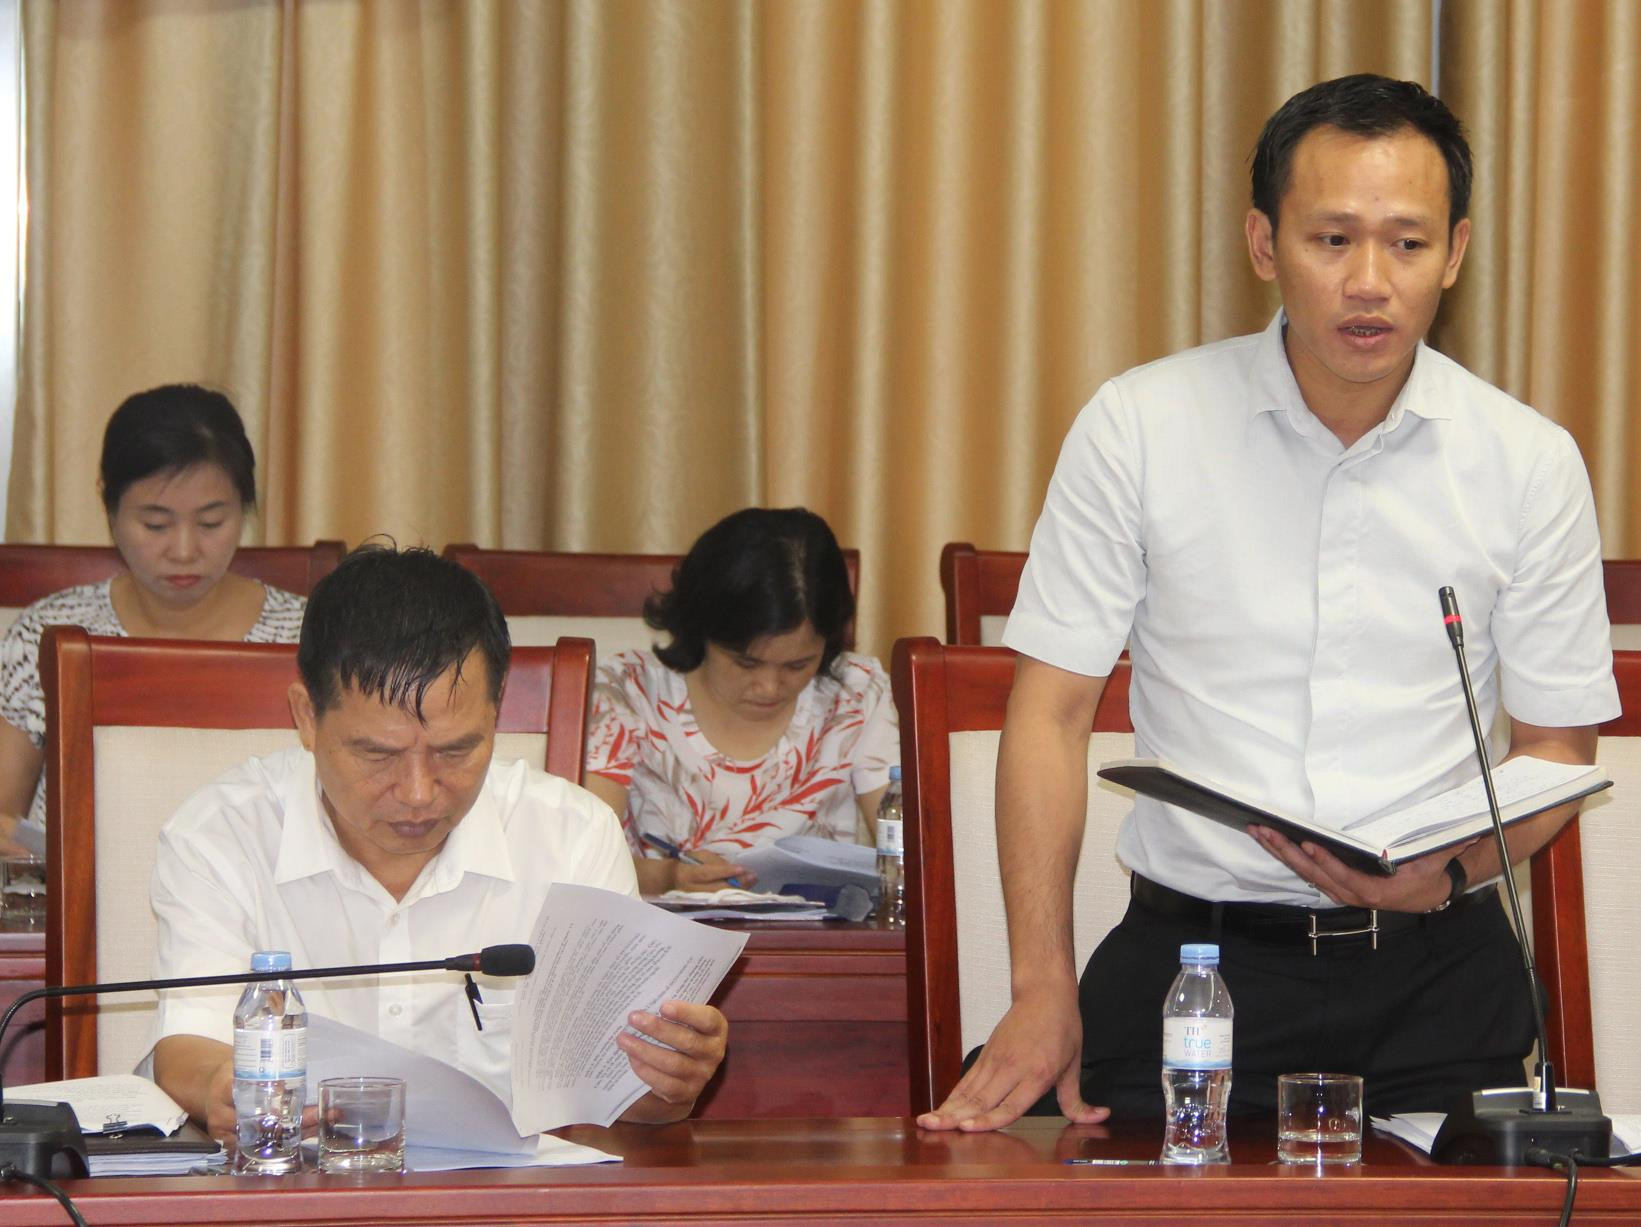 Đồng chí Trần Viết Dũng - Phó Giám đốc Sở Tài chính phát biểu tại cuộc họp. Ảnh: Văn Trường